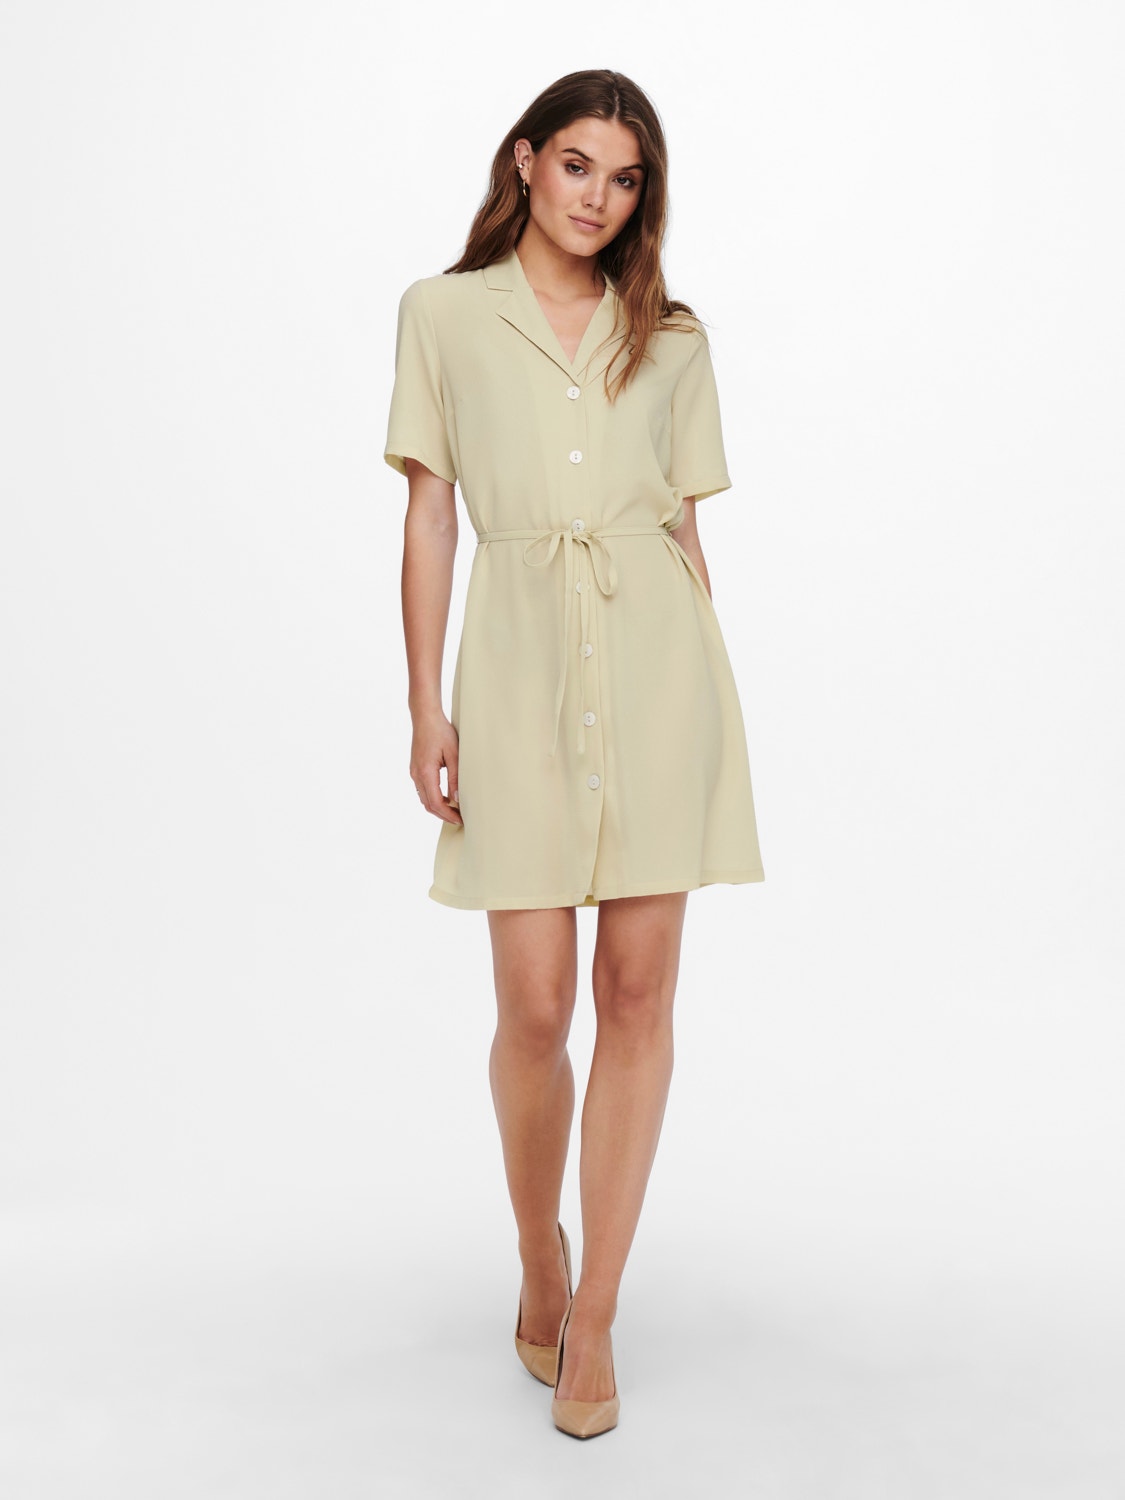 ONLY Normal geschnitten Hemdkragen Kurzes Kleid -Brown Rice - 15202528